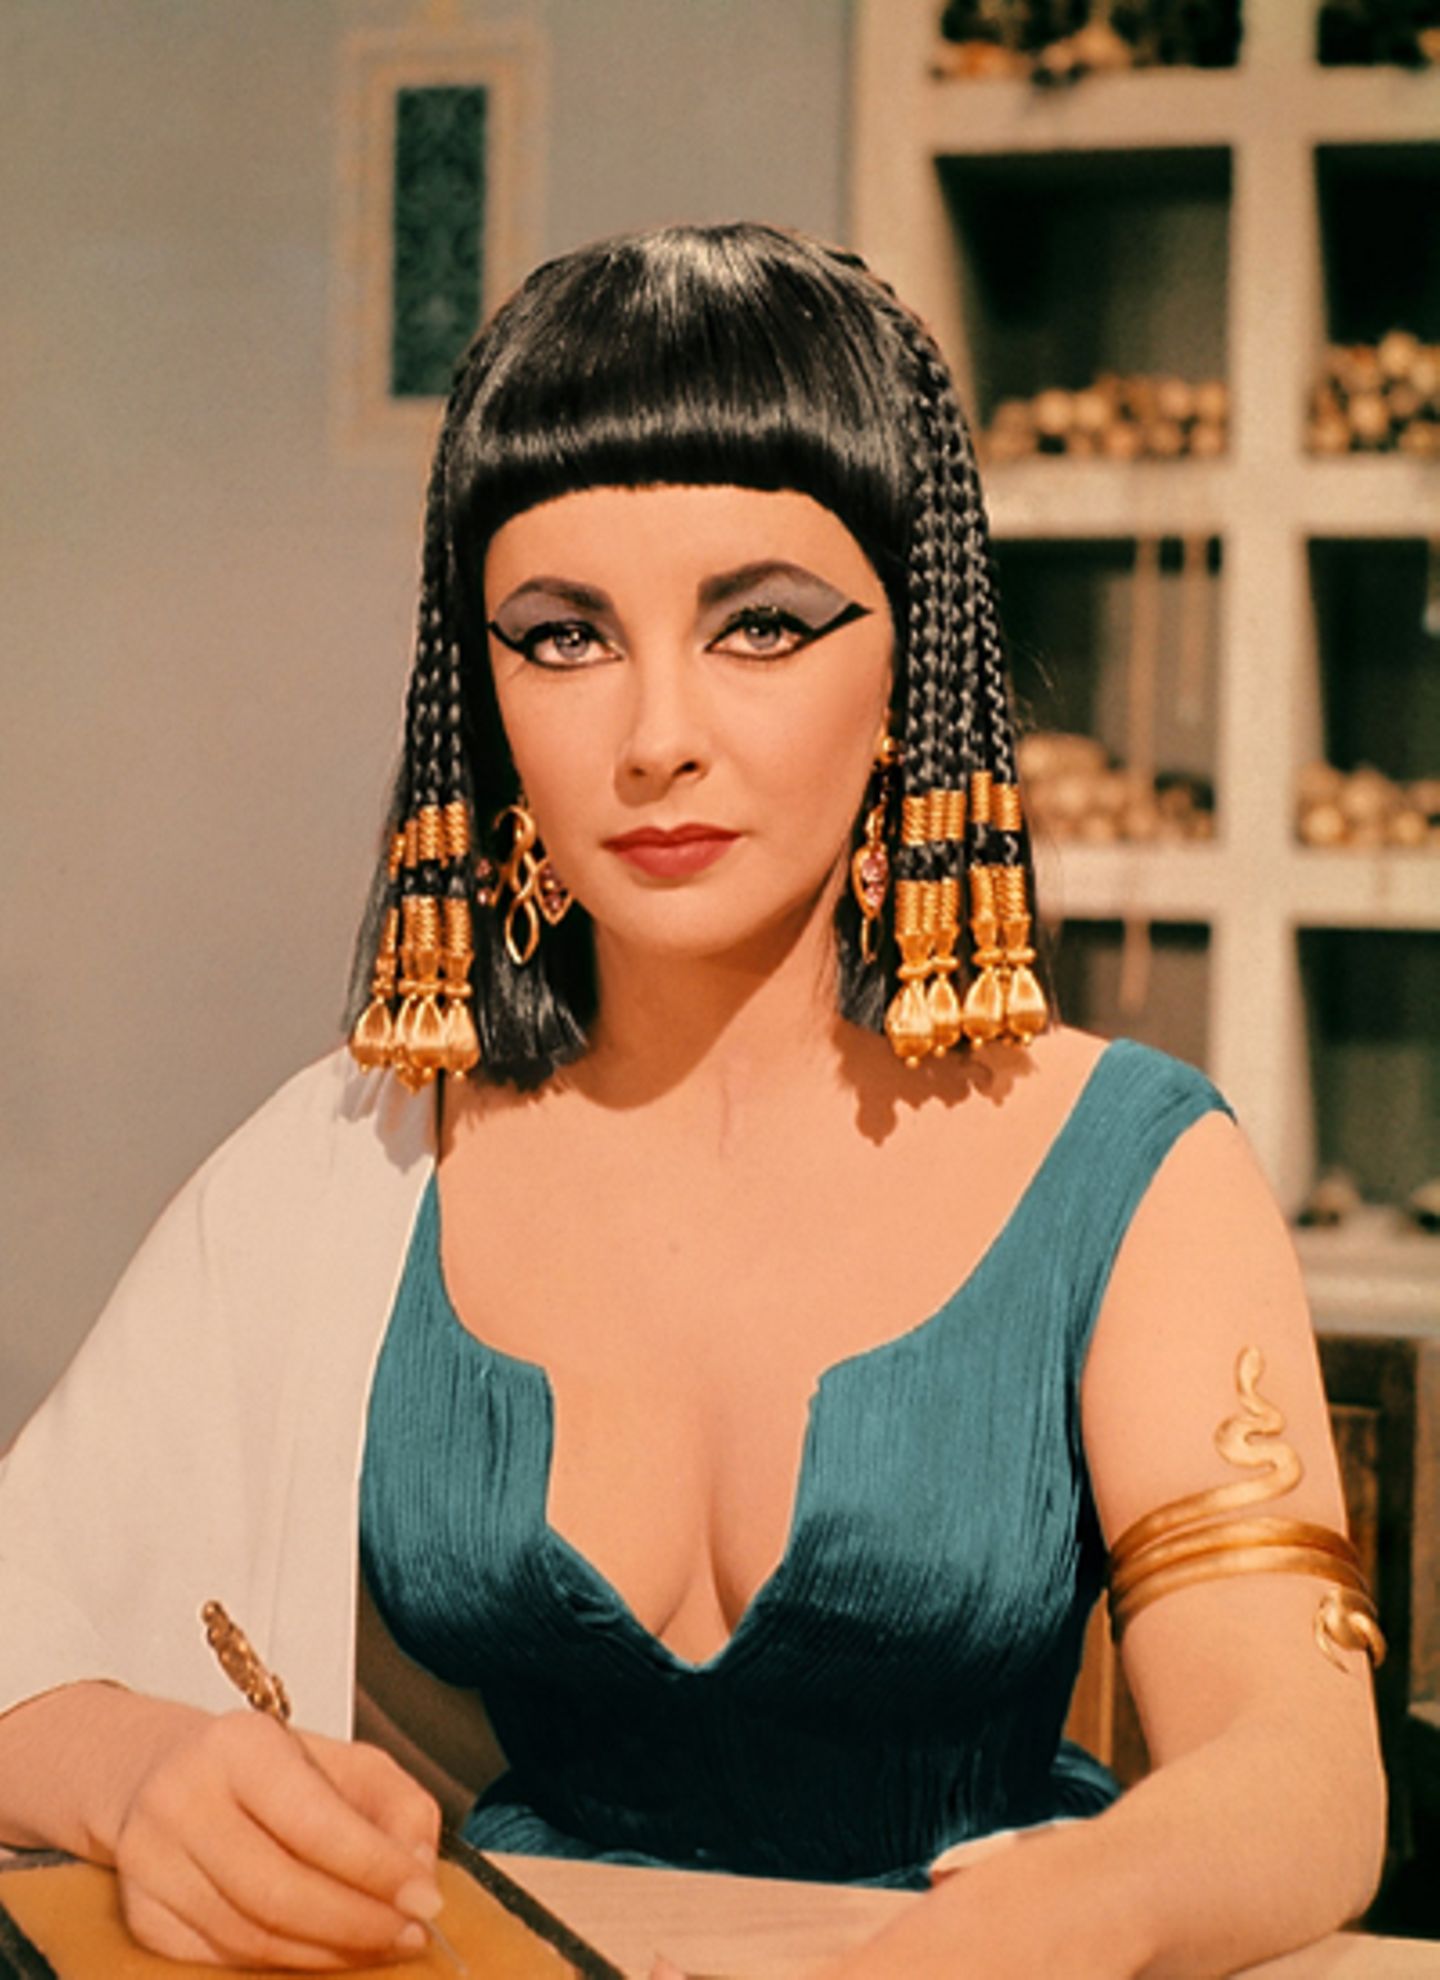 Elizabeth Taylor in "Cleopatra"